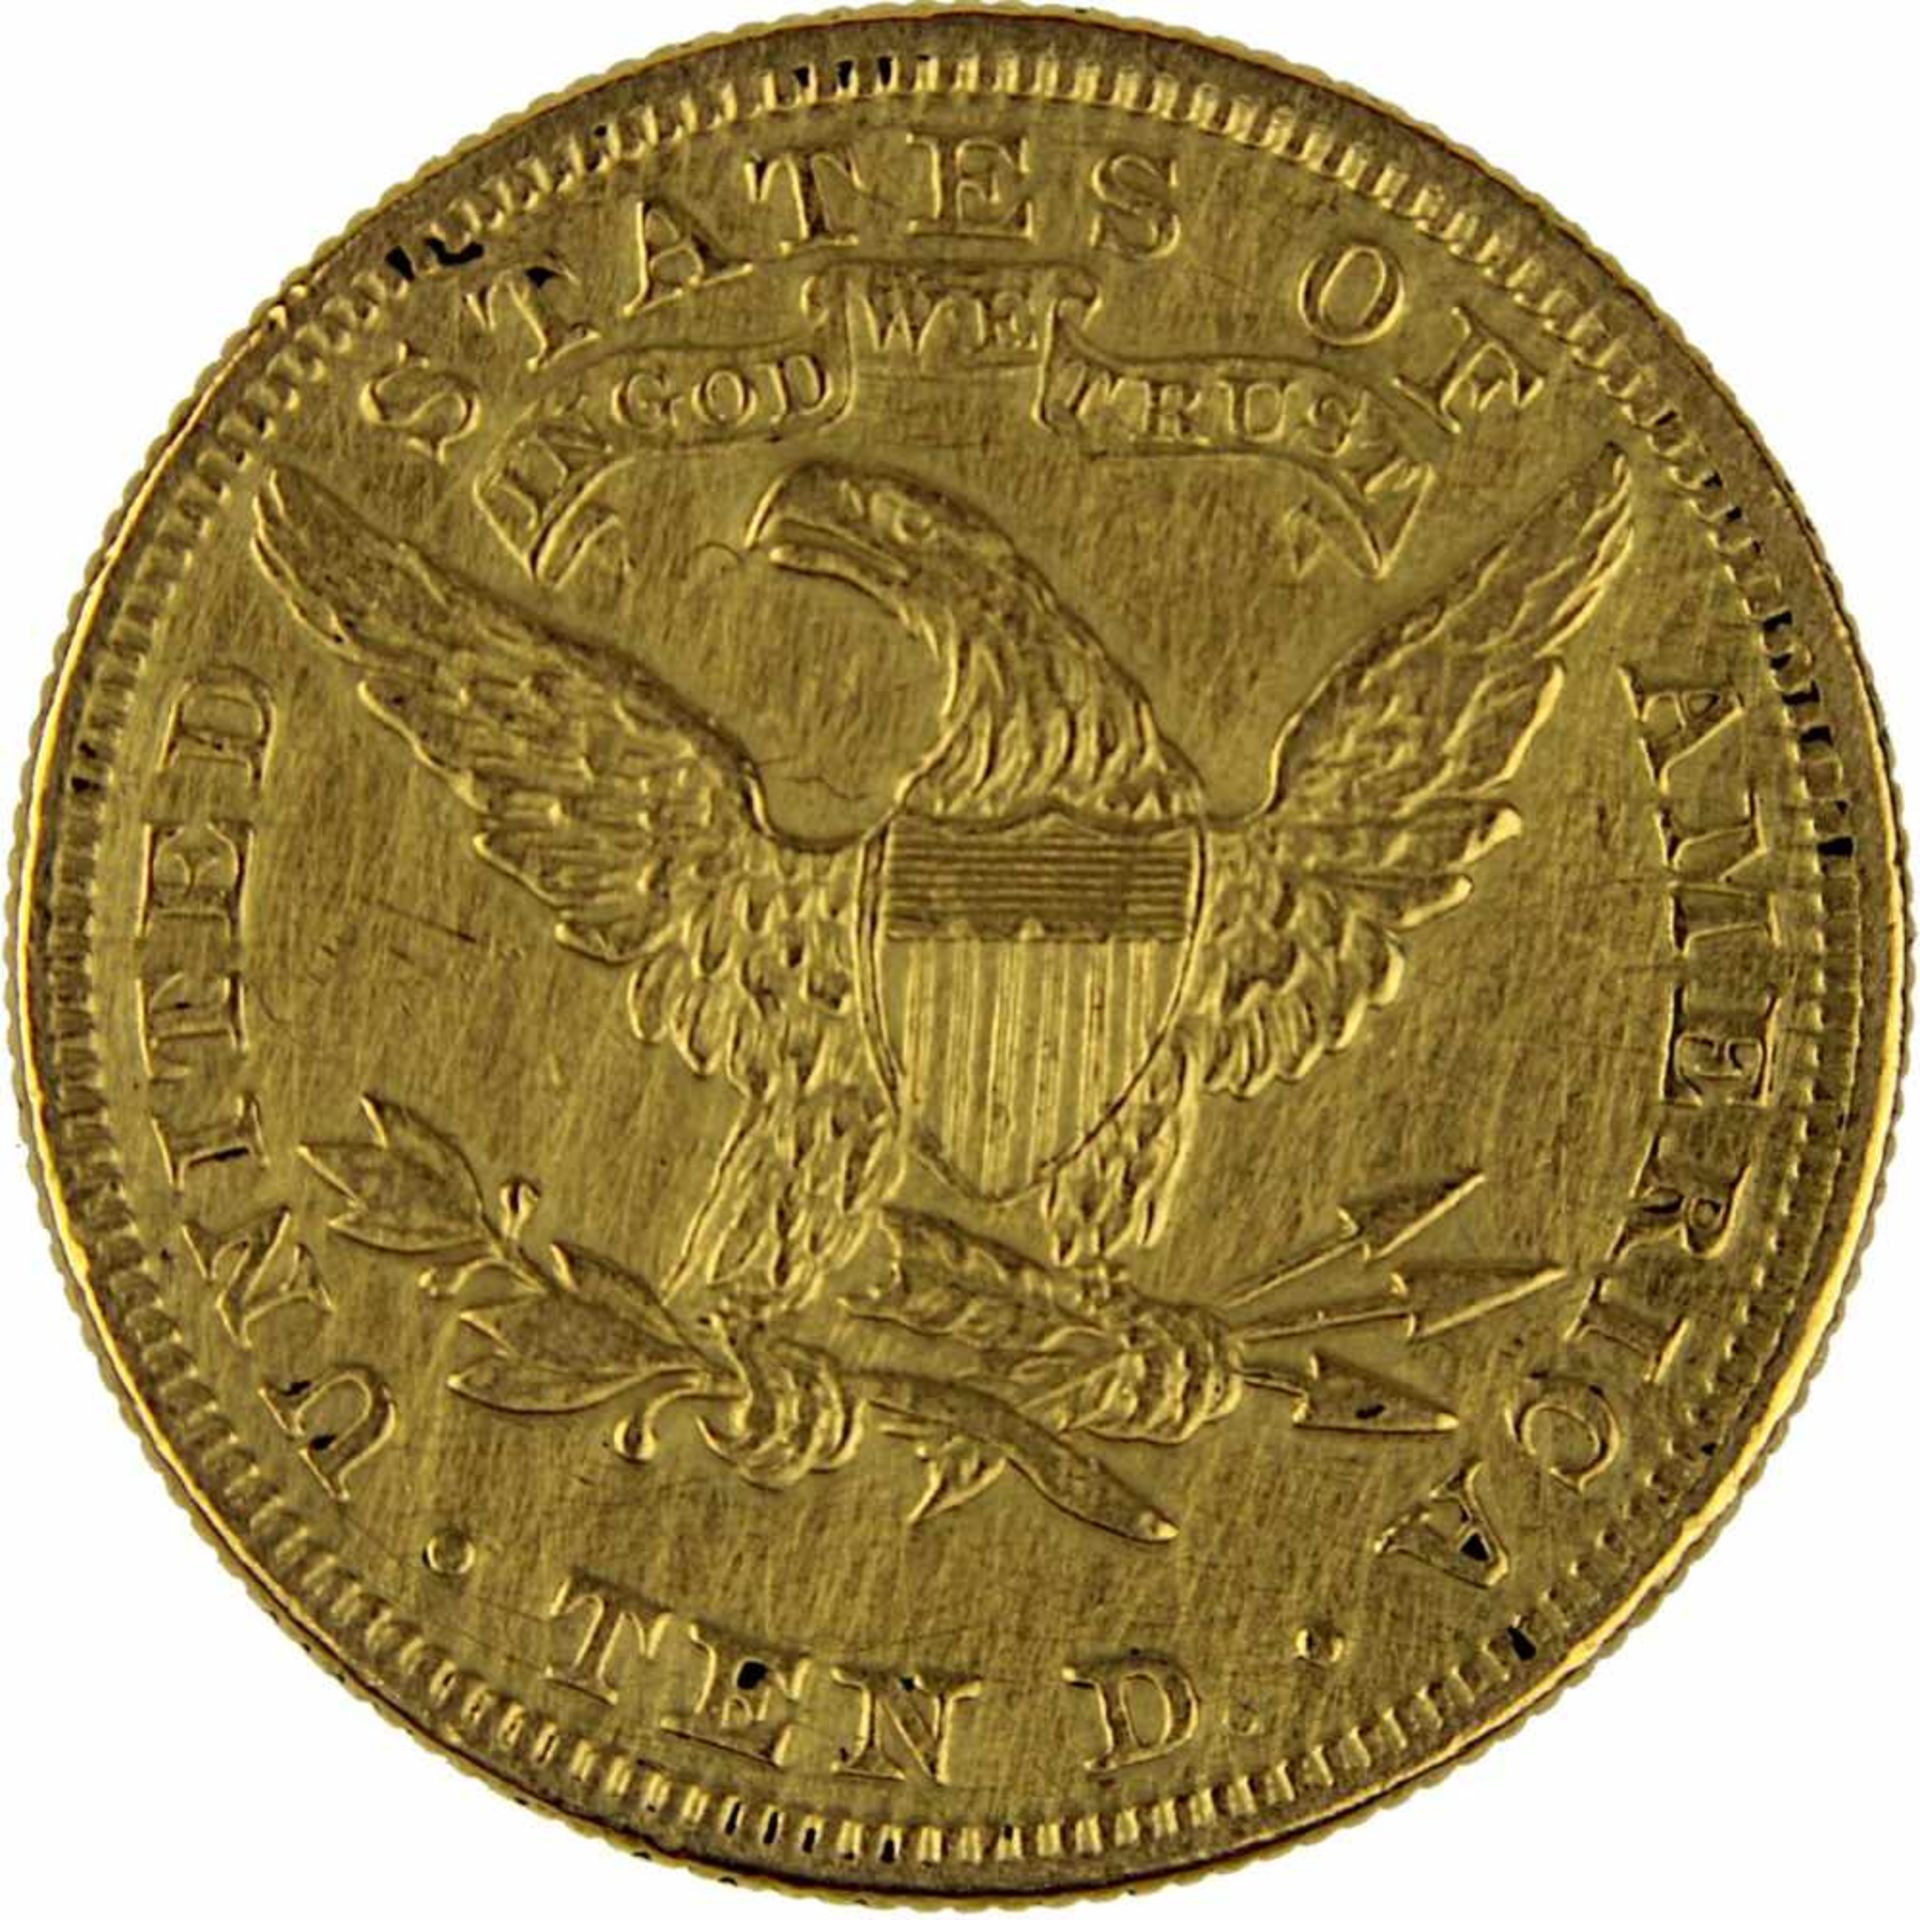 Goldmünze zu 10 Dollar, USA 1897, 900er Gold, 16,7 g, Coroned Head / Eagle, Erhaltung sehr schön - - Bild 2 aus 3